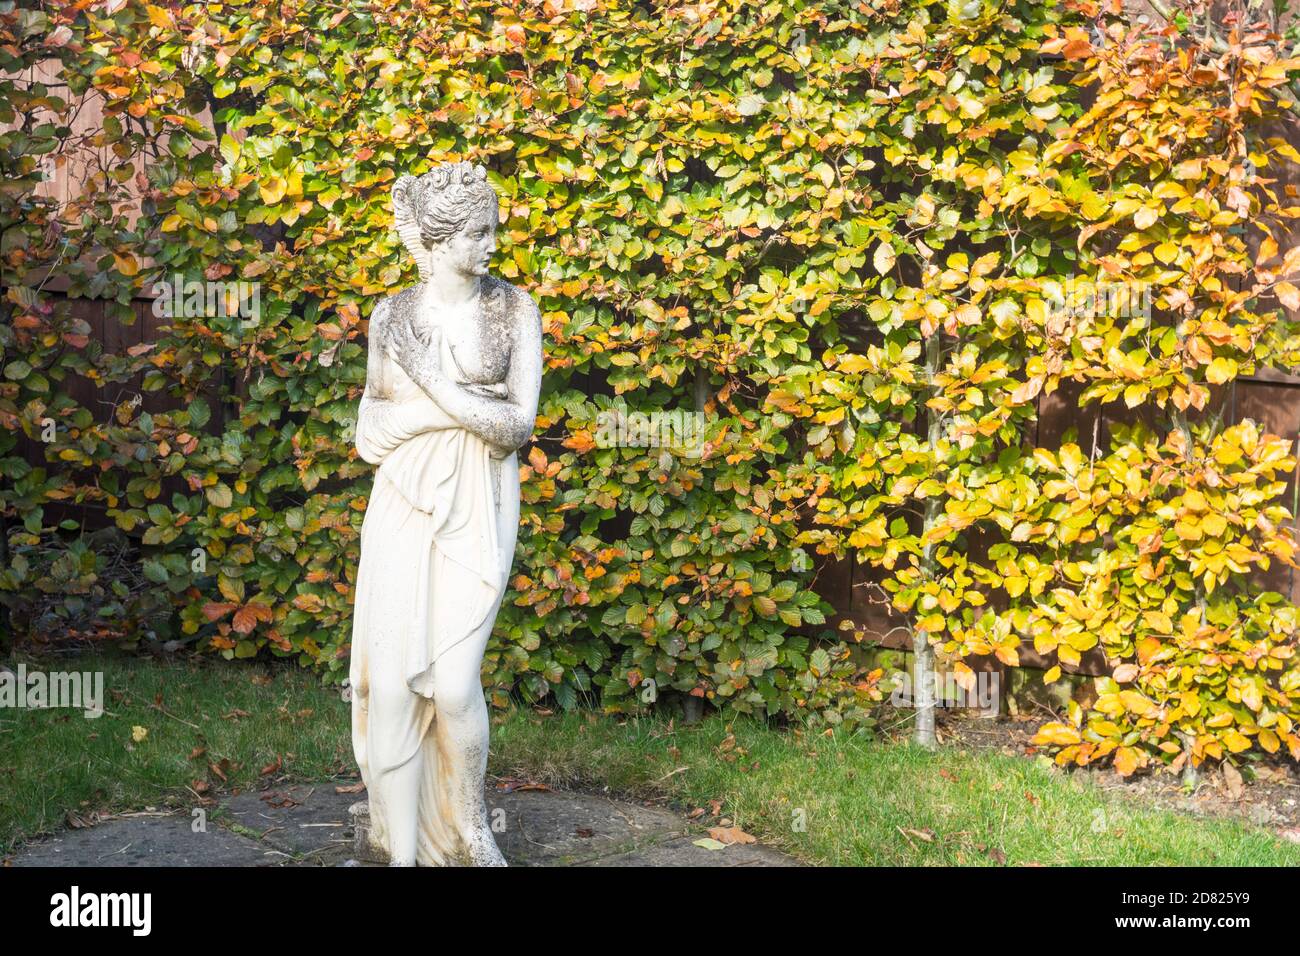 Une statue d'une femelle avant une haie de hêtre (Fagus sylvatica) en automne dans un jardin domestique, Royaume-Uni Banque D'Images